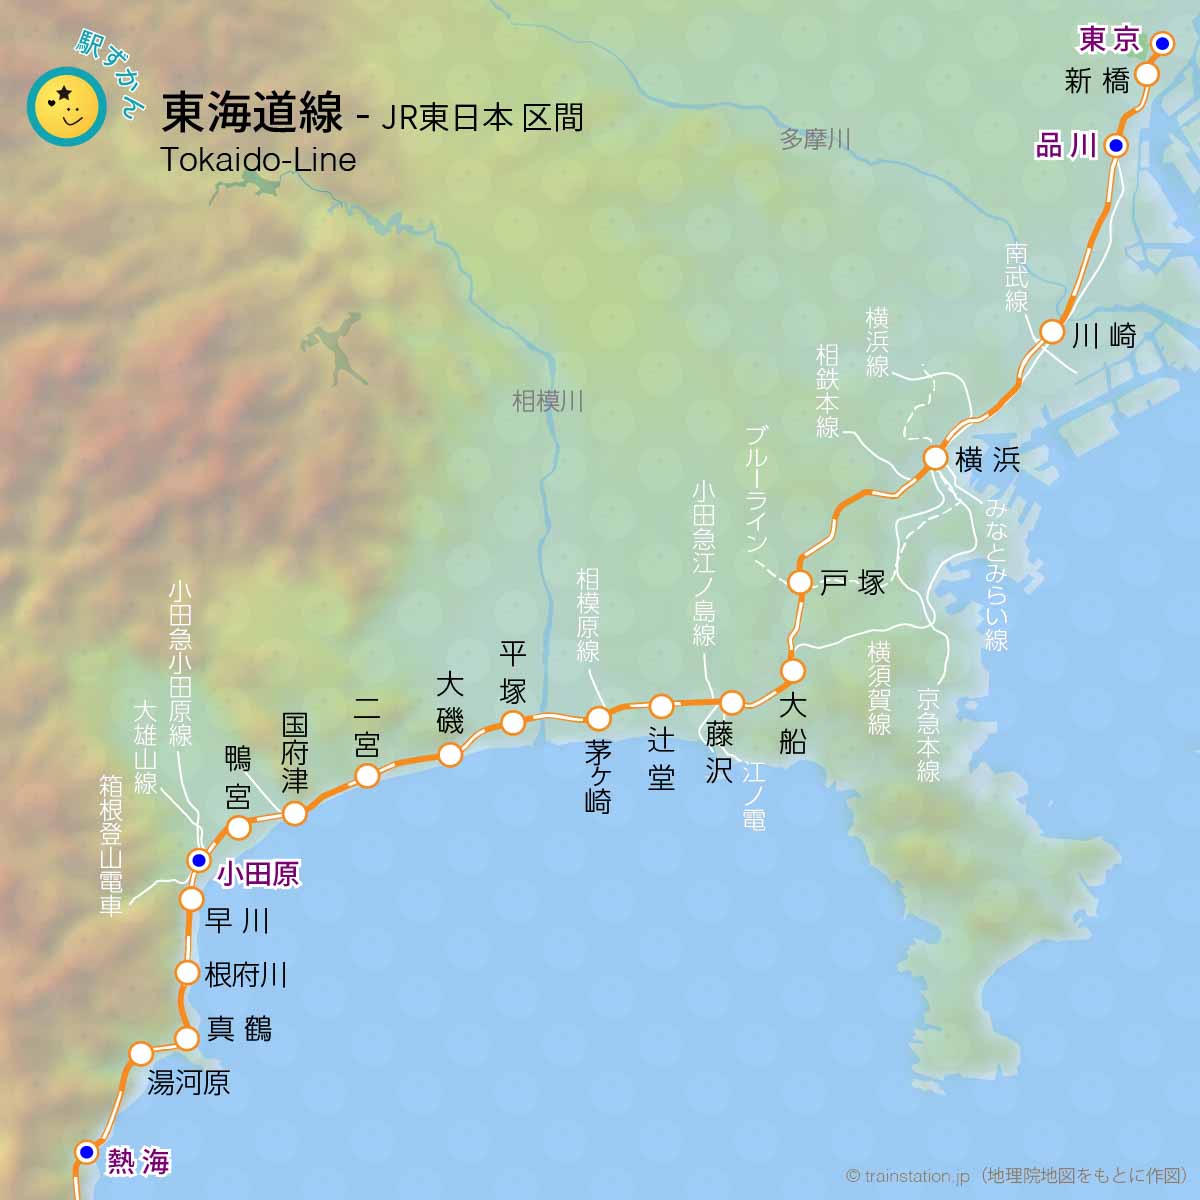 東海道線路線図と地形地図